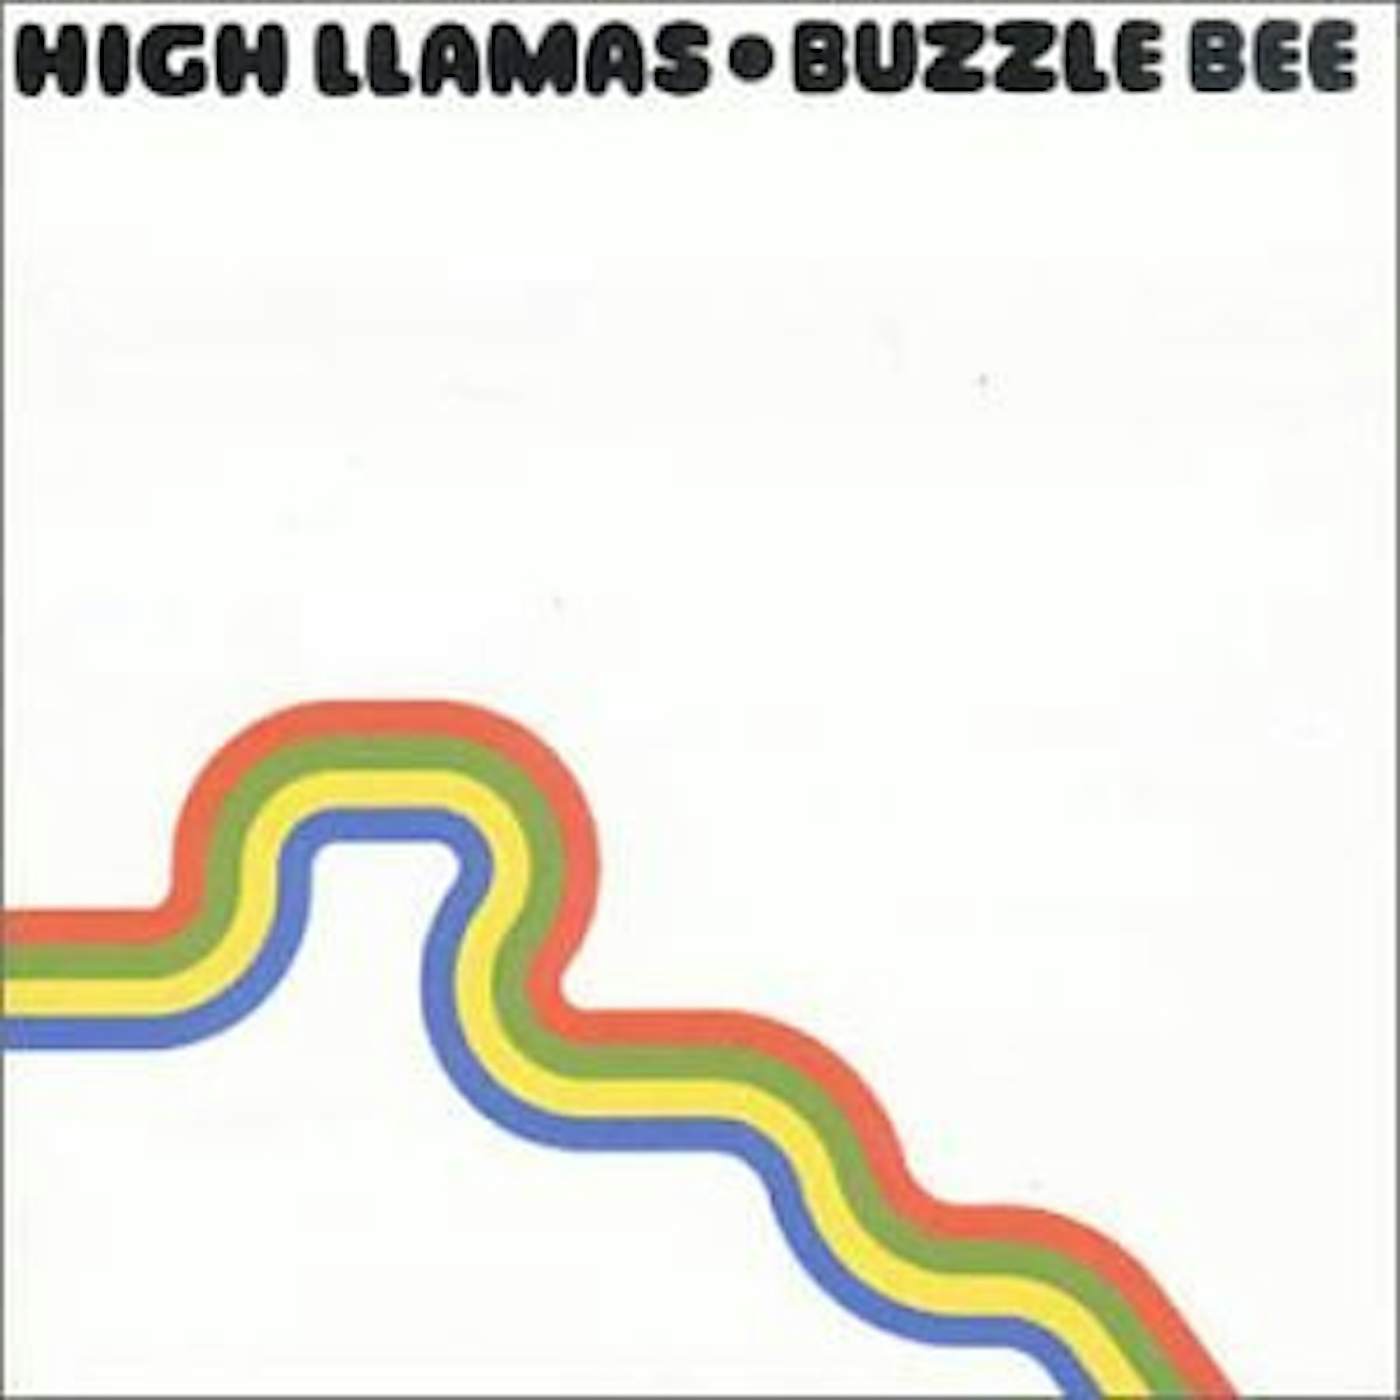 High Llamas BUZZULE BEE CD